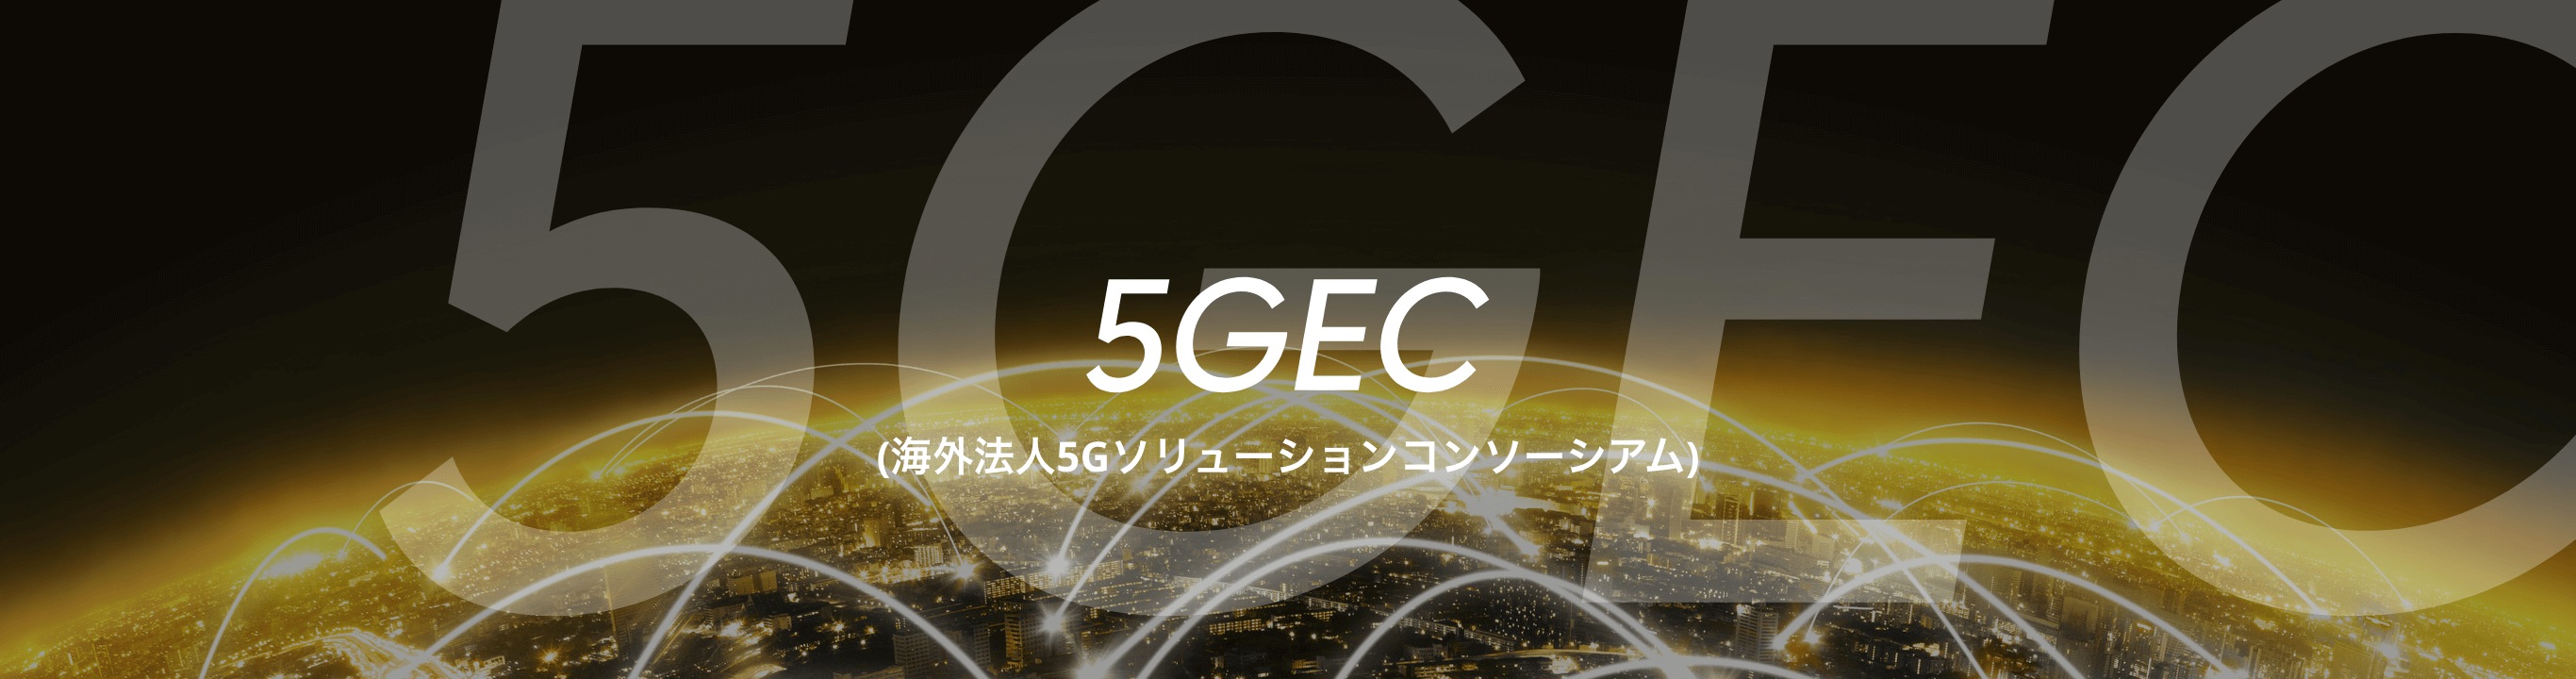 5GEC（海外邦人5Gソリューションコンソーシアム）